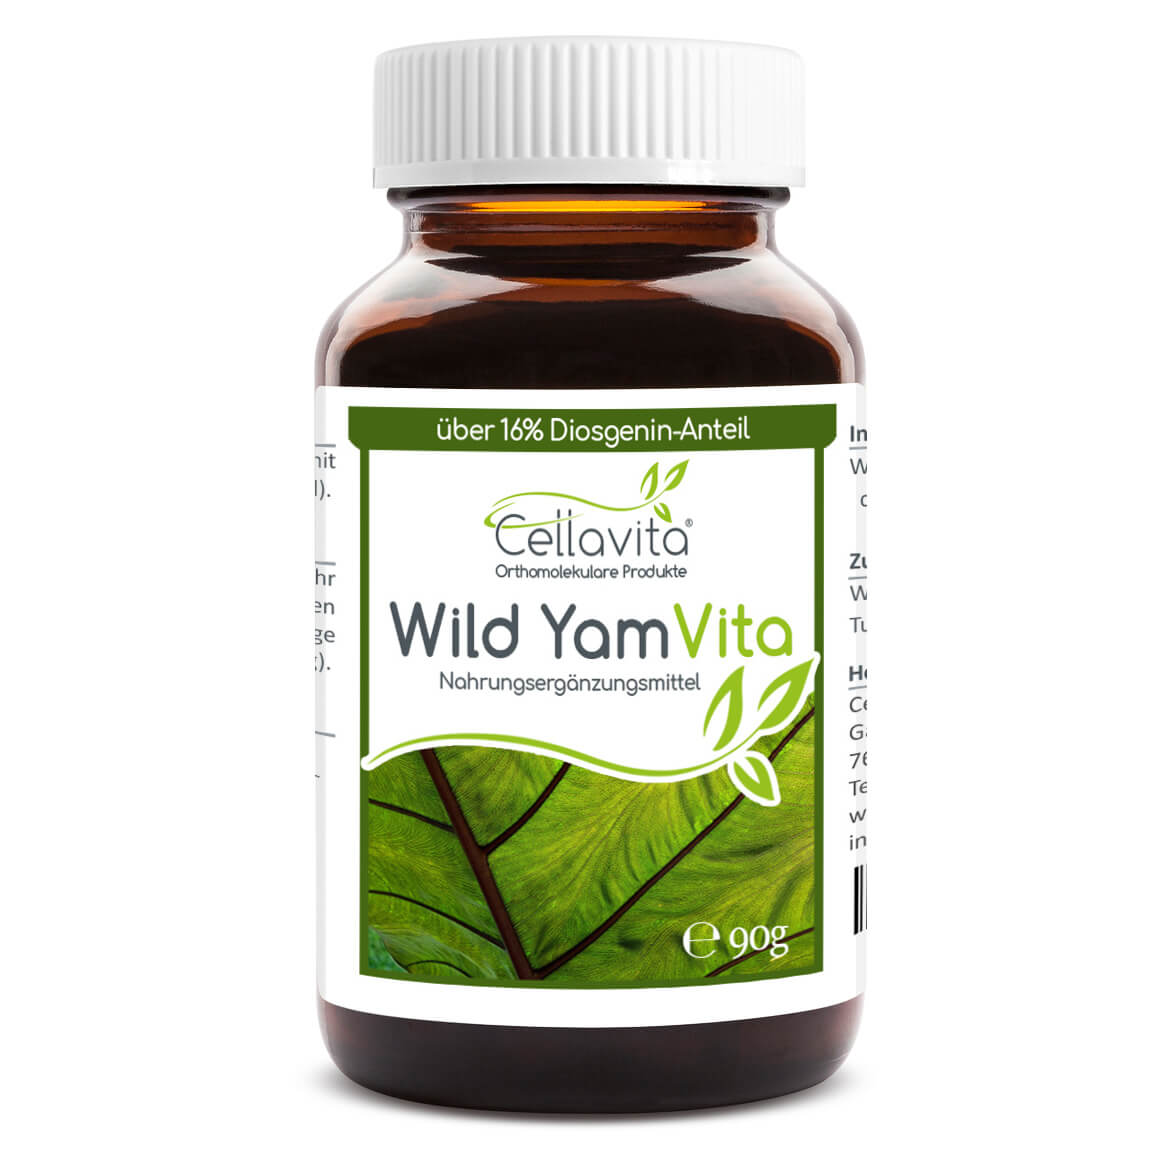 Wild Yam Vita (Yamswurzel)